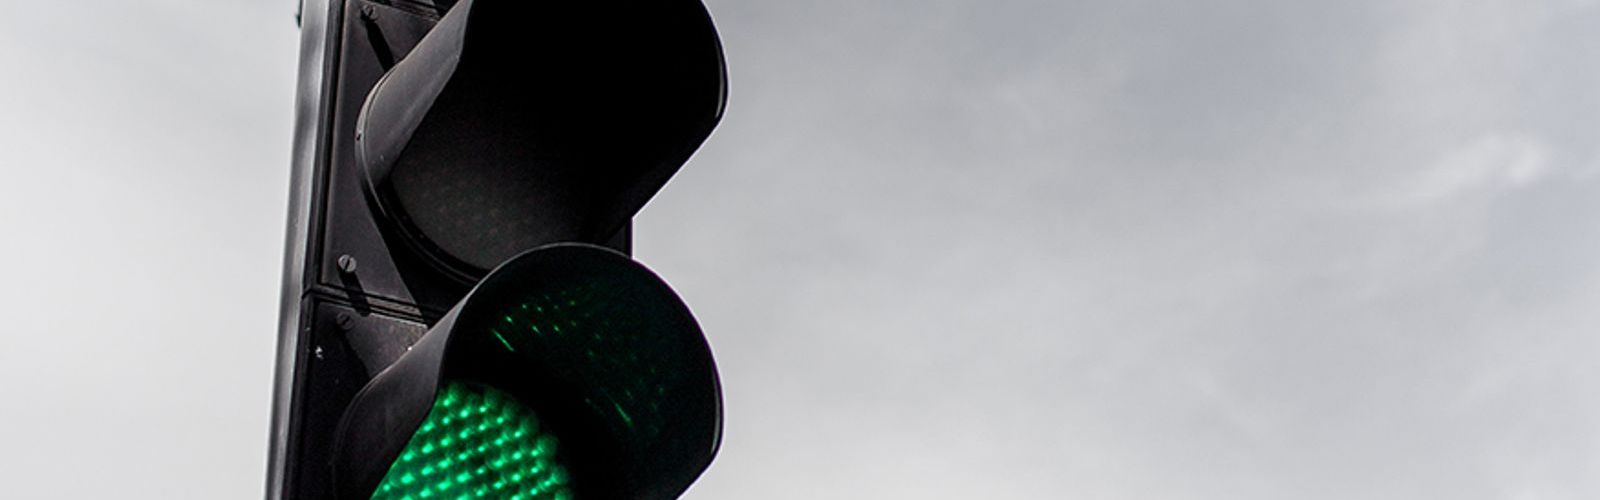 Green traffic light (bs319836262).jpg